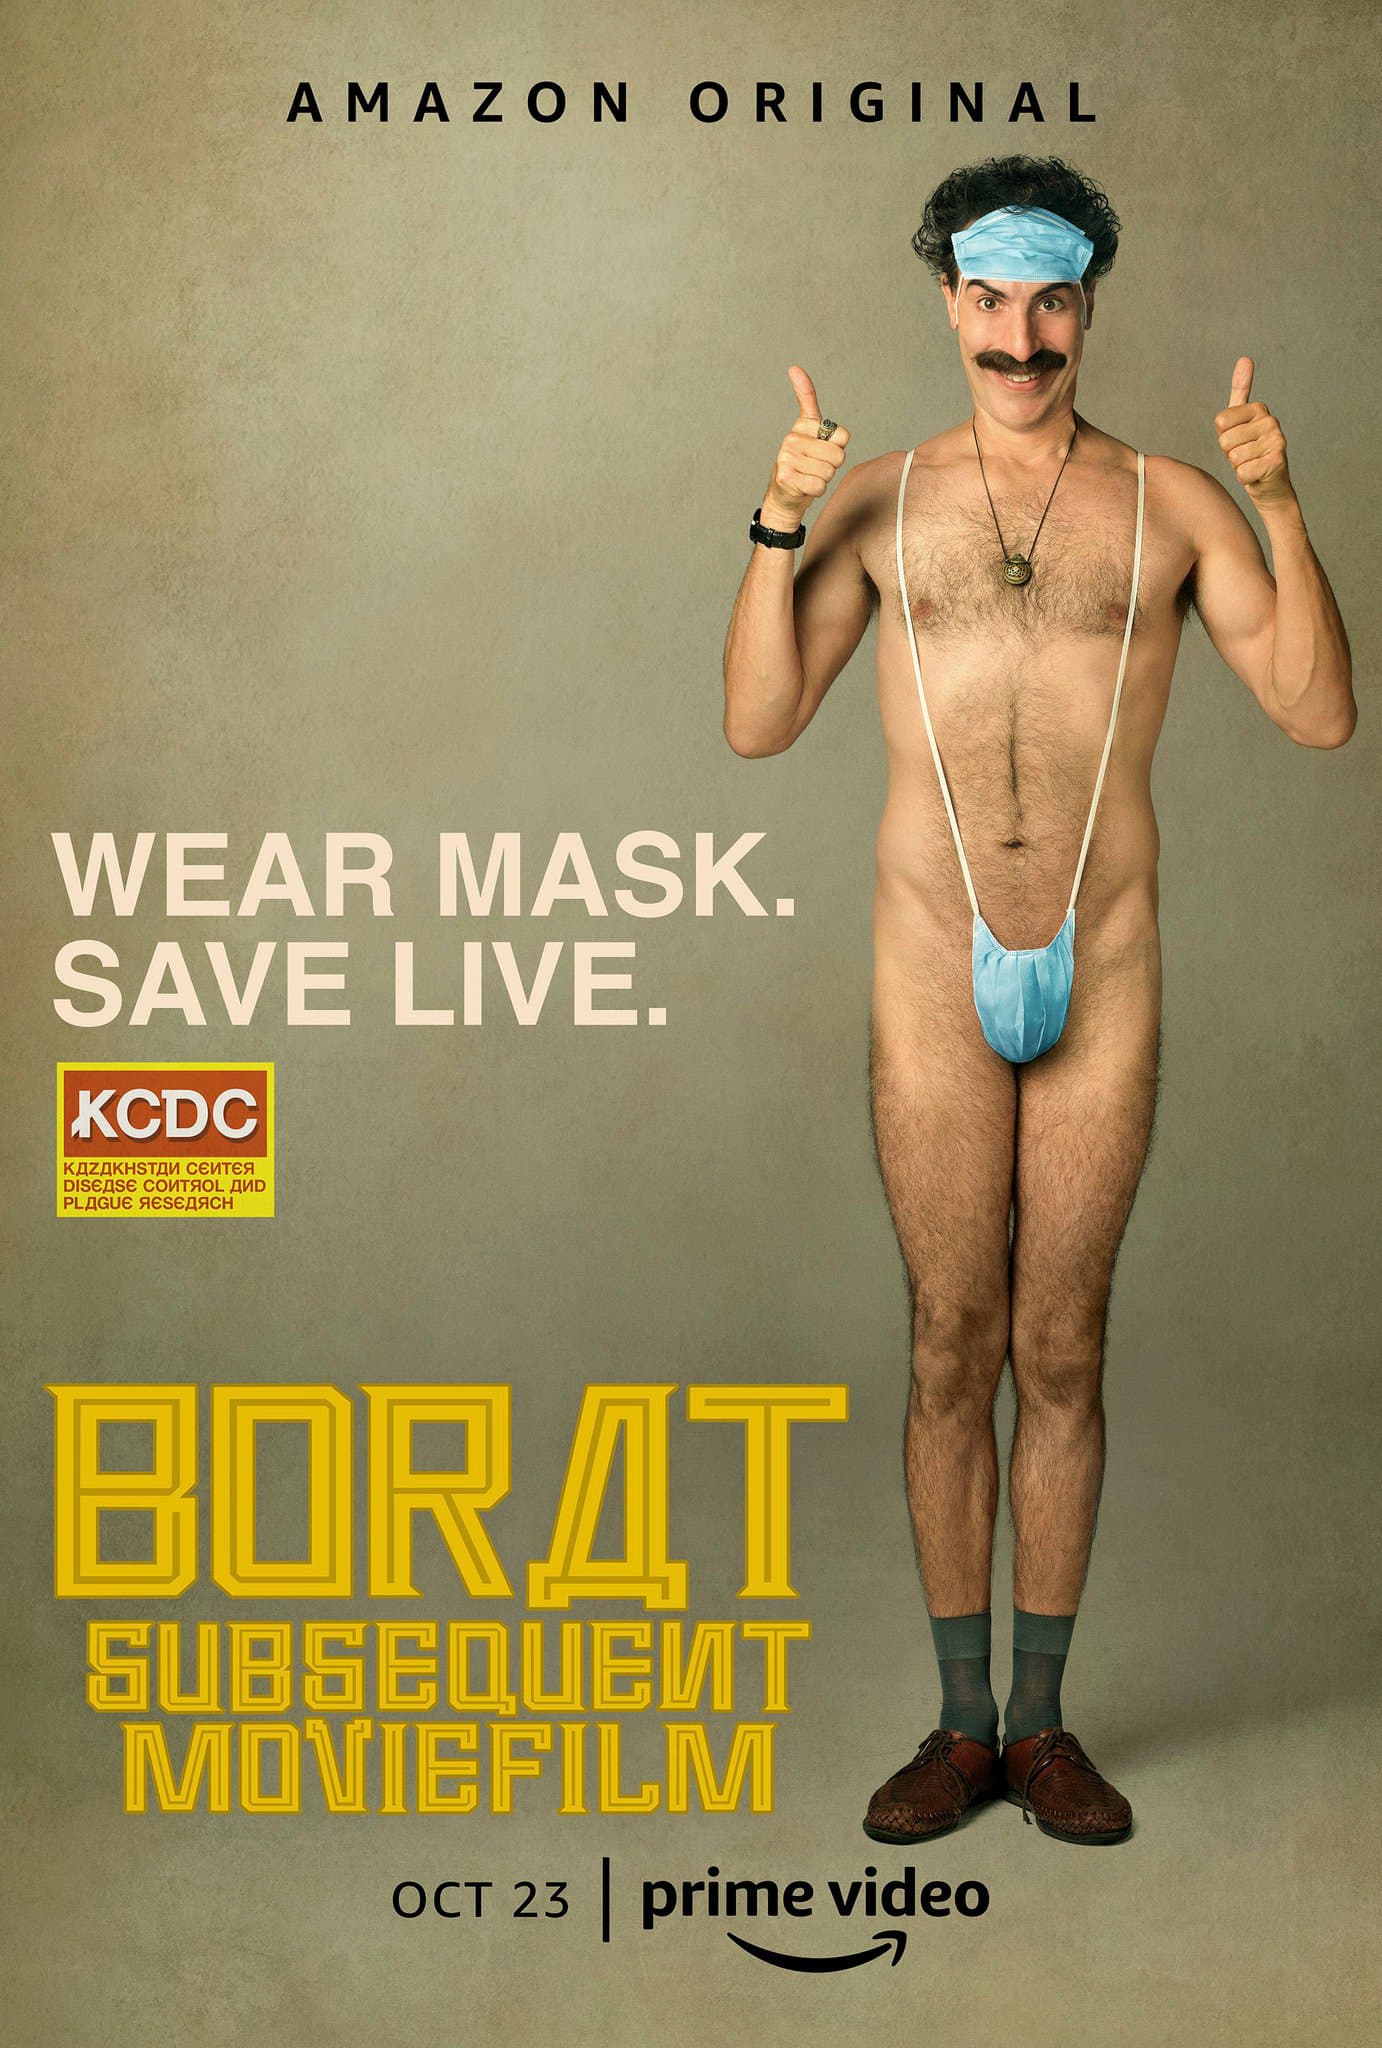 Borat 2 : Amazon dévoile une première bande-annonce hilarante